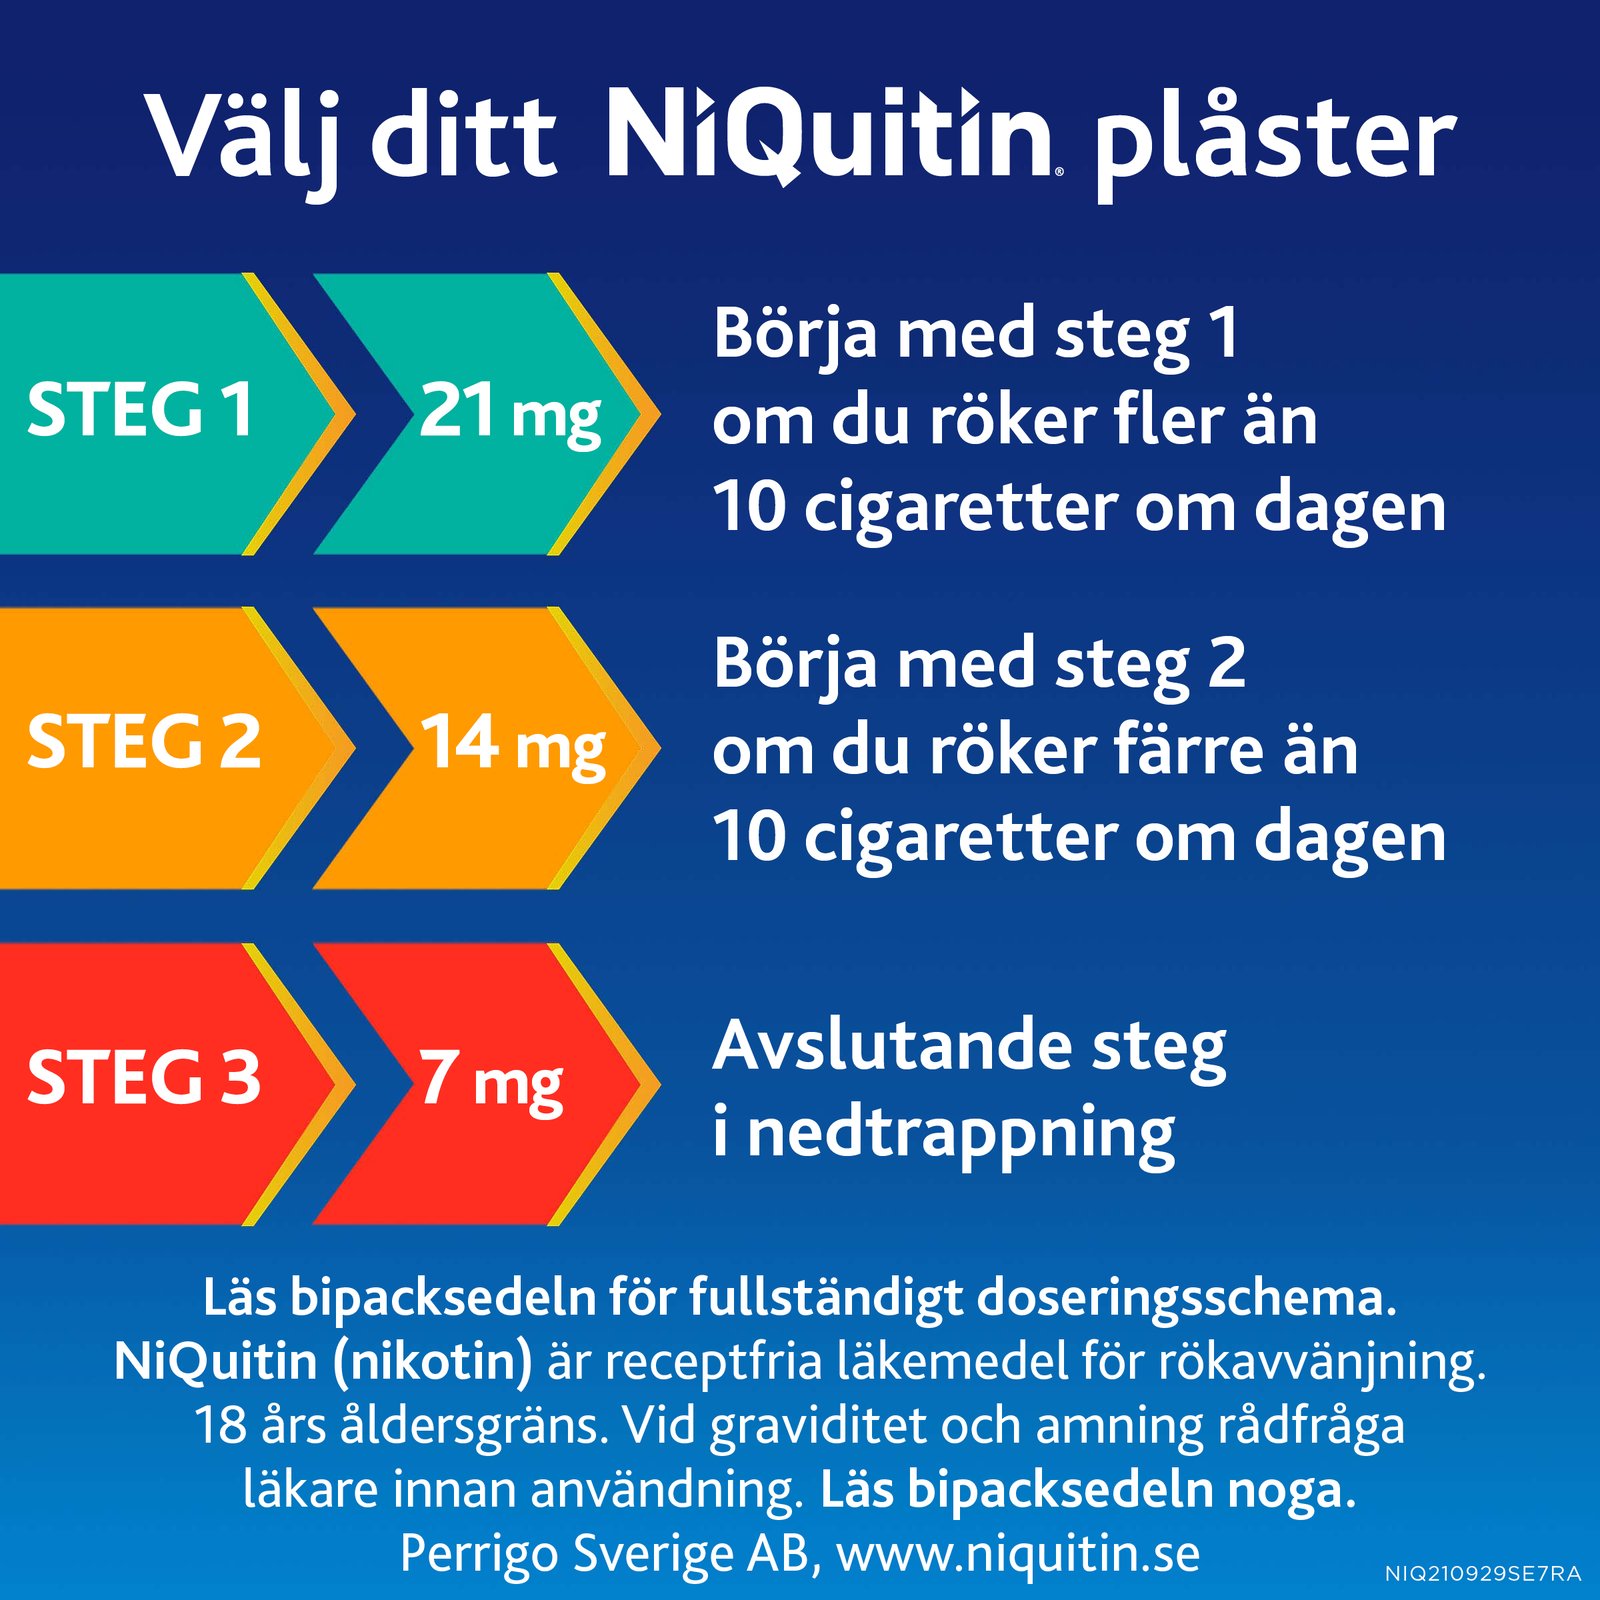 Niquitin Clear 7 mg / 24 timmar Depotplåster Nikotinplåster 7 st